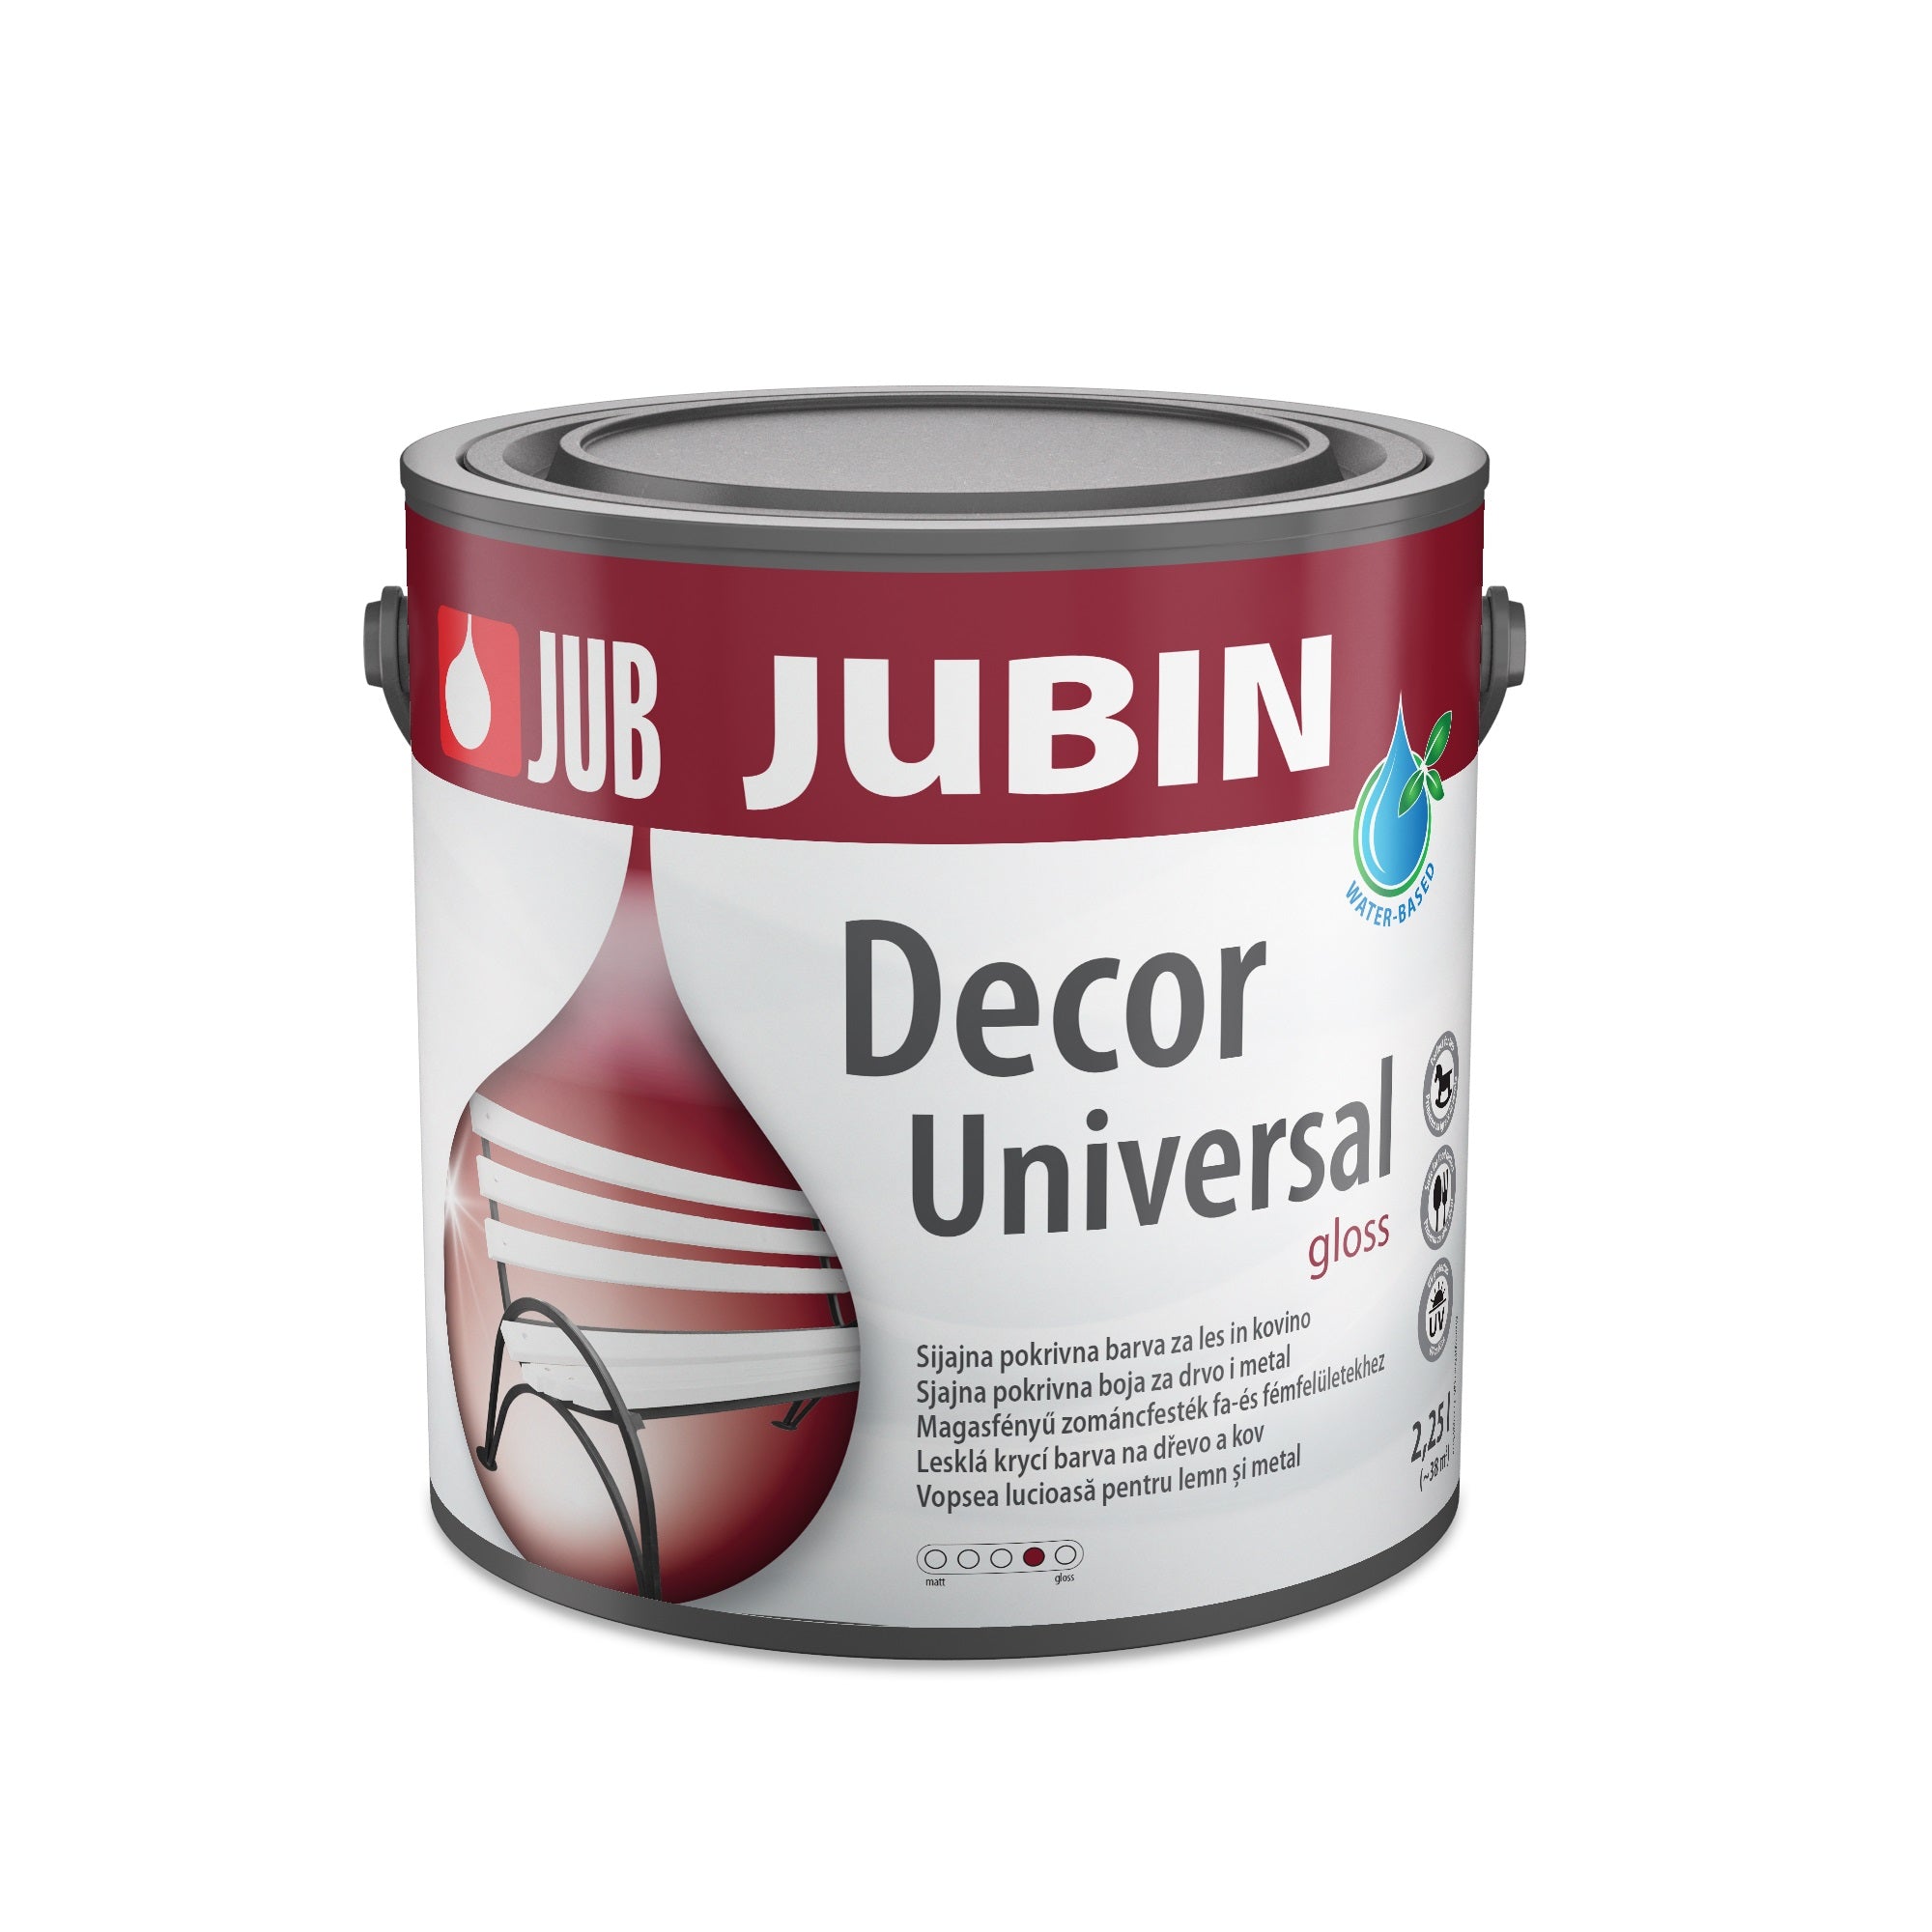 JUB JUBIN Decor Universal Univerzálna farba na drevo a kov gloss 2,25 l